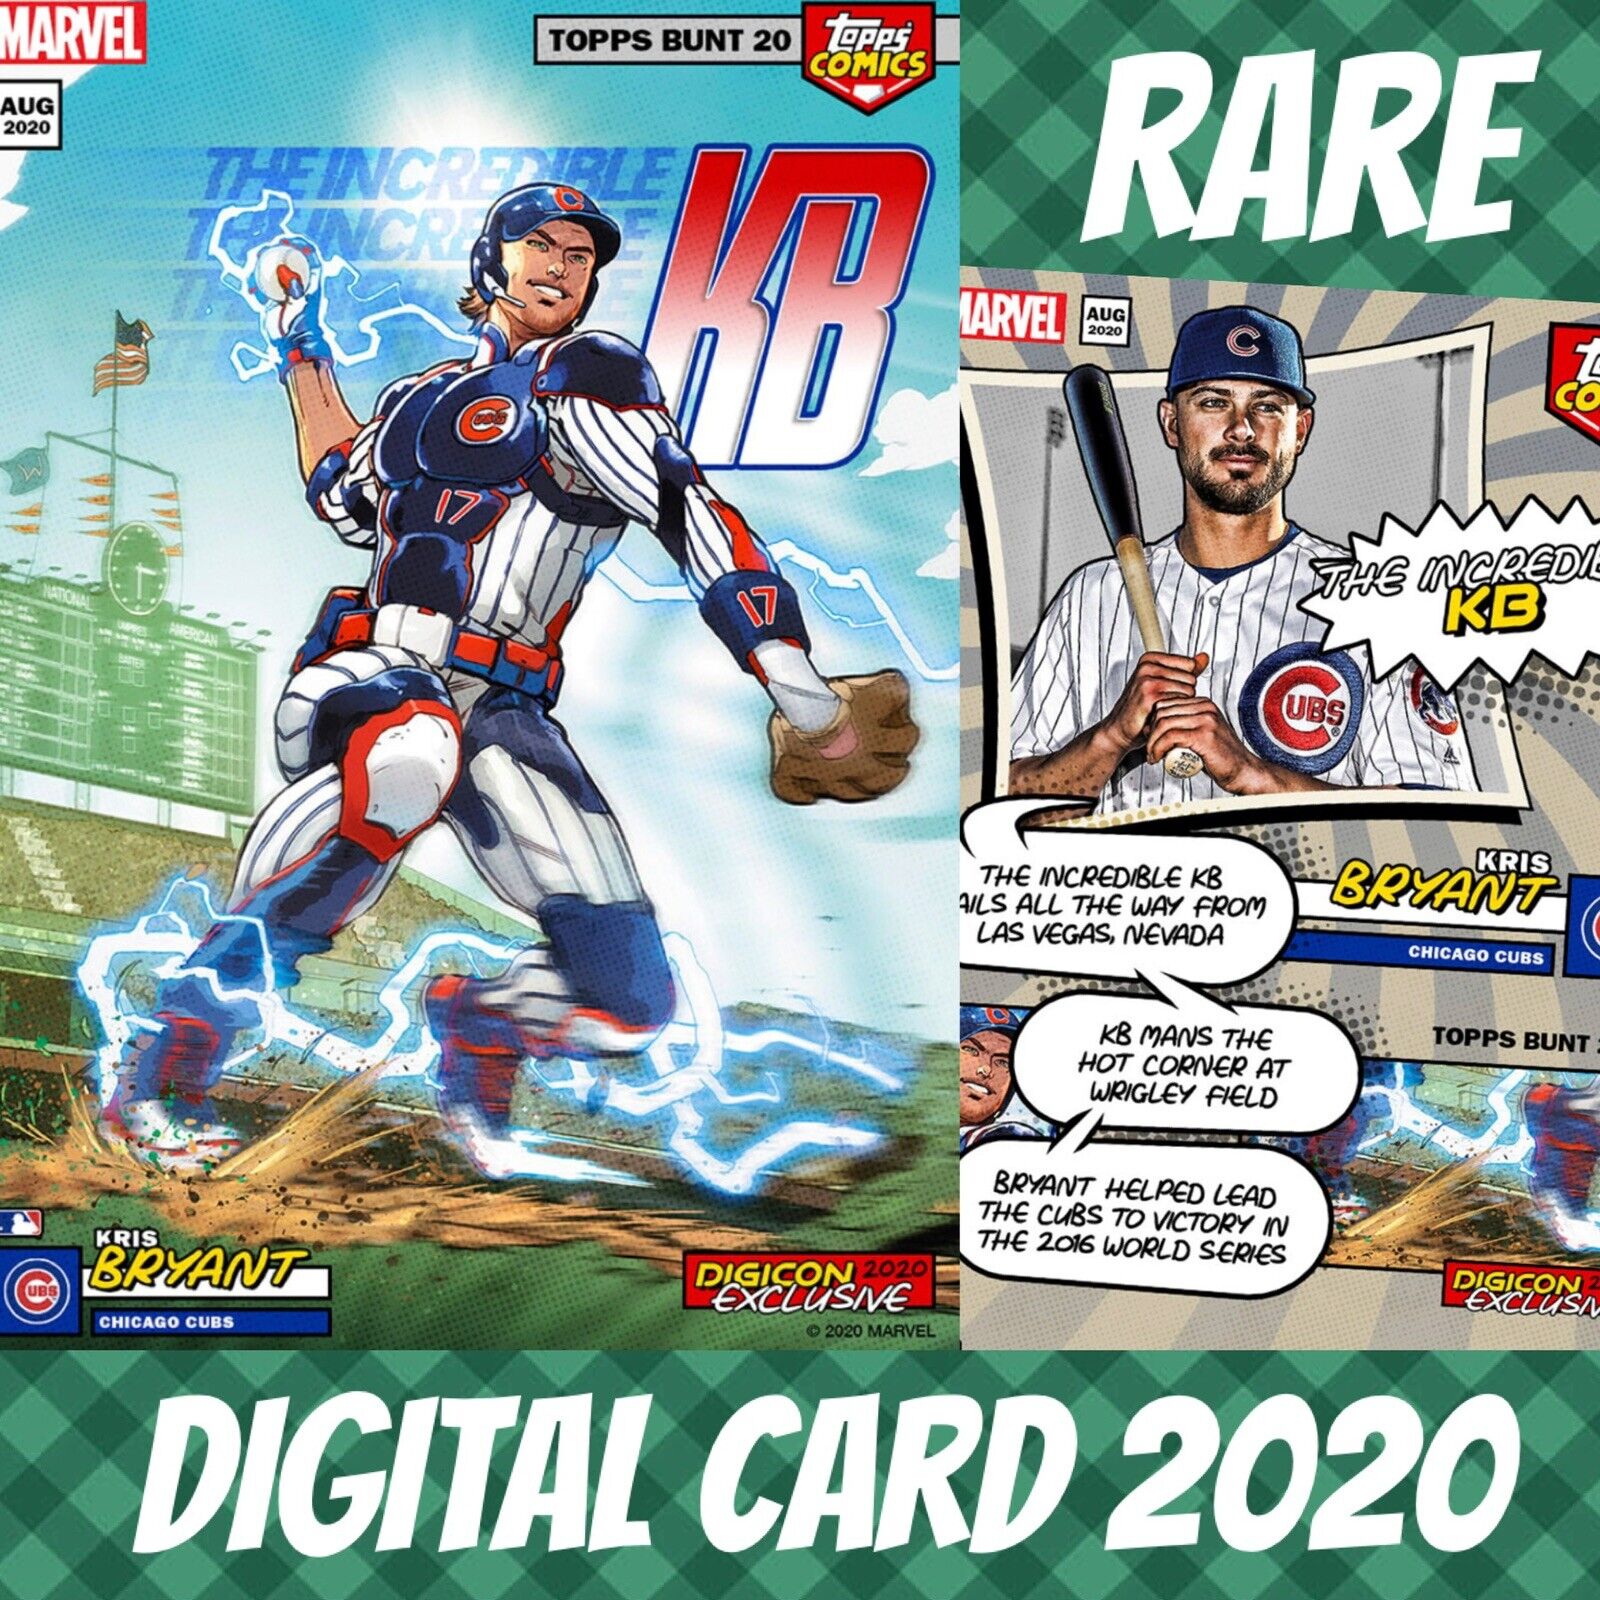 Topps bunt 20 kris bryant comics comic covers full color base 2020 digital card